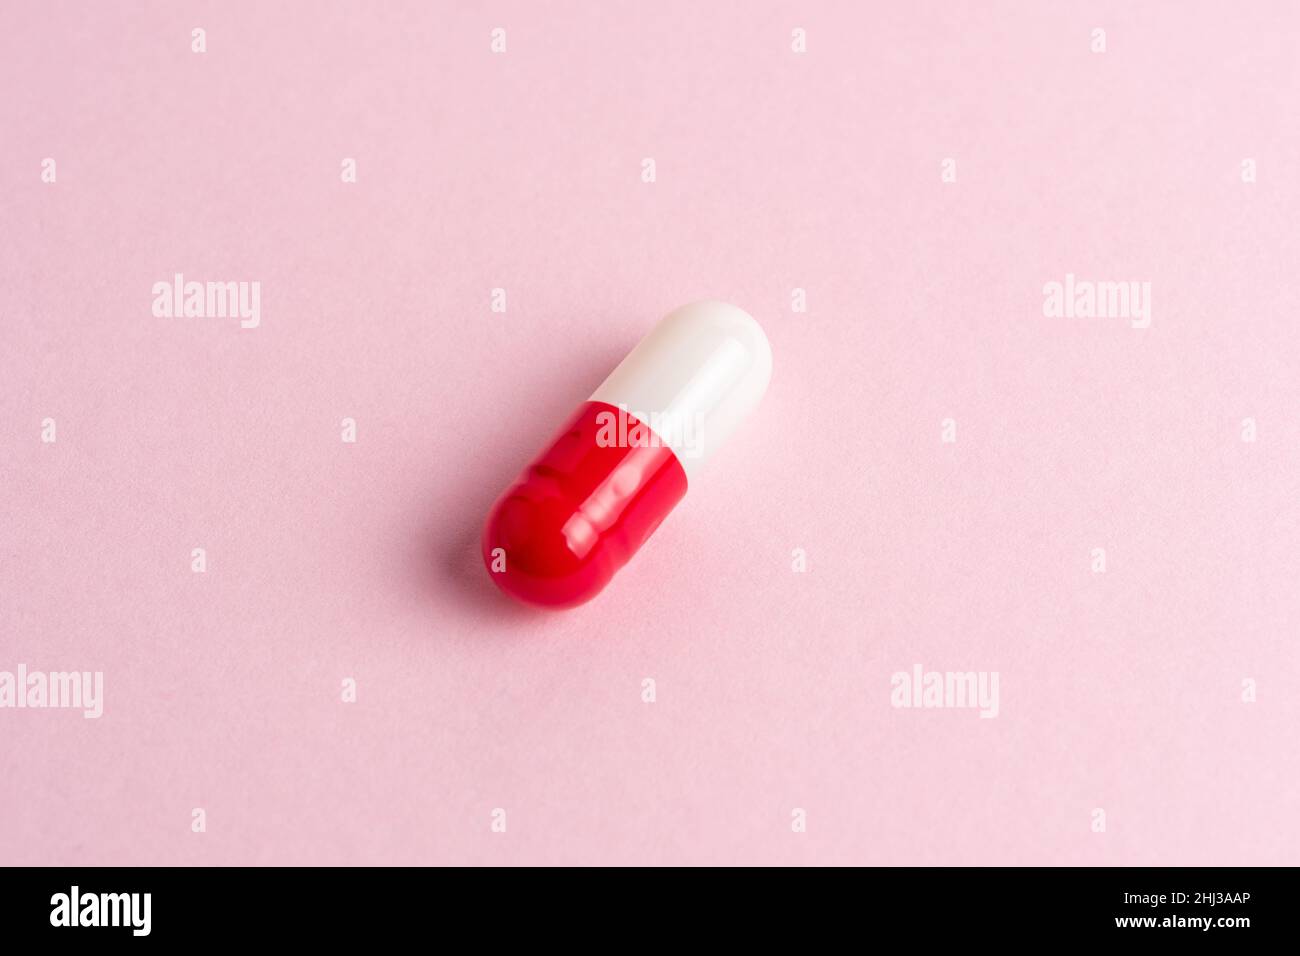 Weiß-rote Kapsel auf einem rosa Hintergrund. Minimales Apothekenkonzept. Flach liegend. Stockfoto